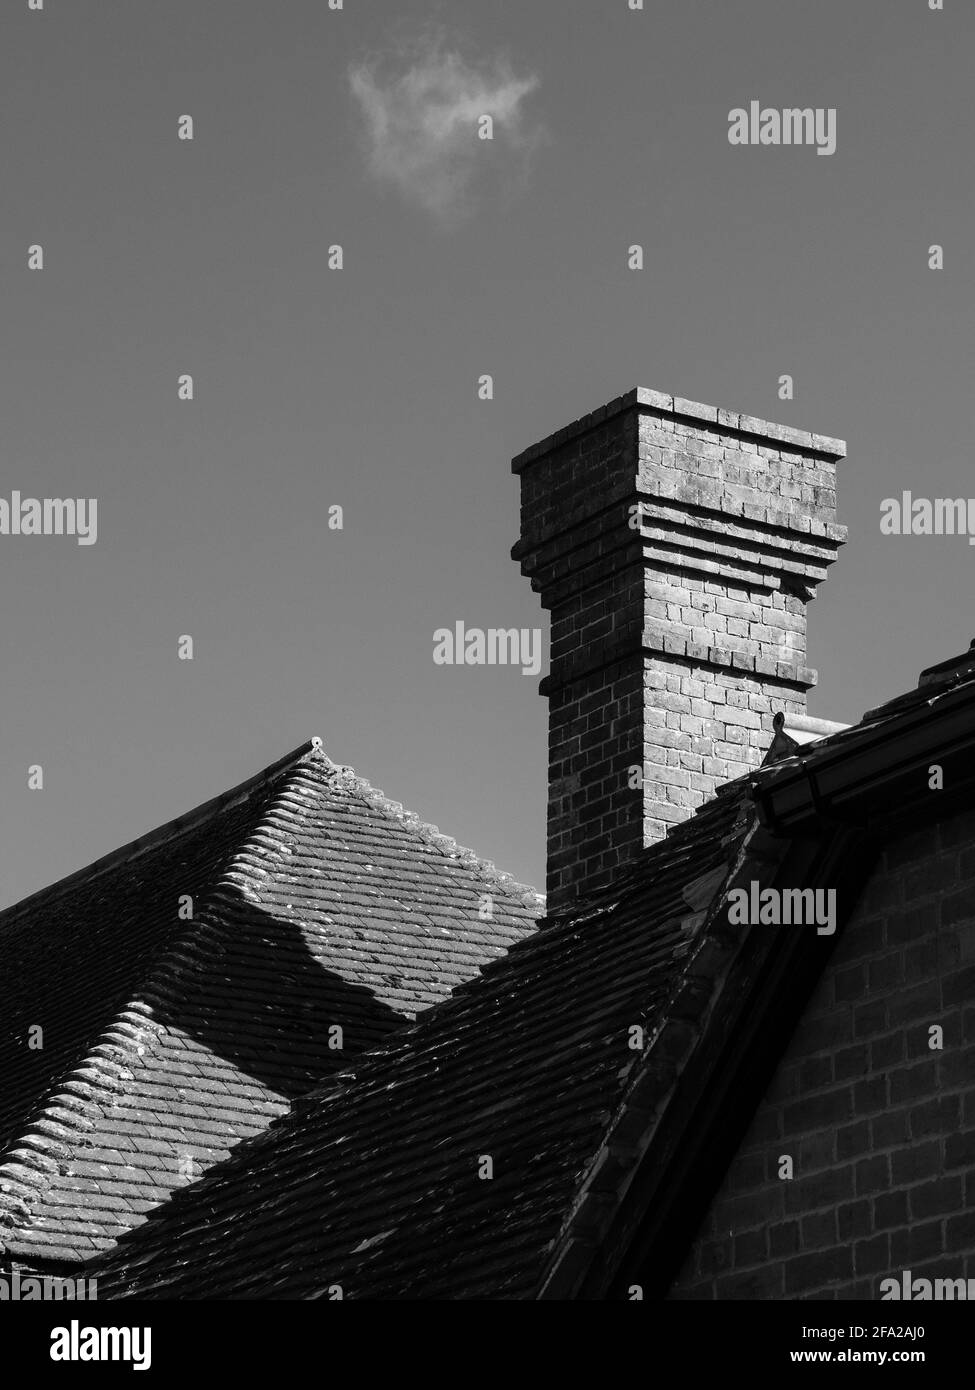 Diagonales, verticales et horizontales sur une image noire et blanche des lignes de toit et une cheminée à Westbury, Wiltshire, Angleterre, Royaume-Uni., avec un nuage de wispy. Banque D'Images